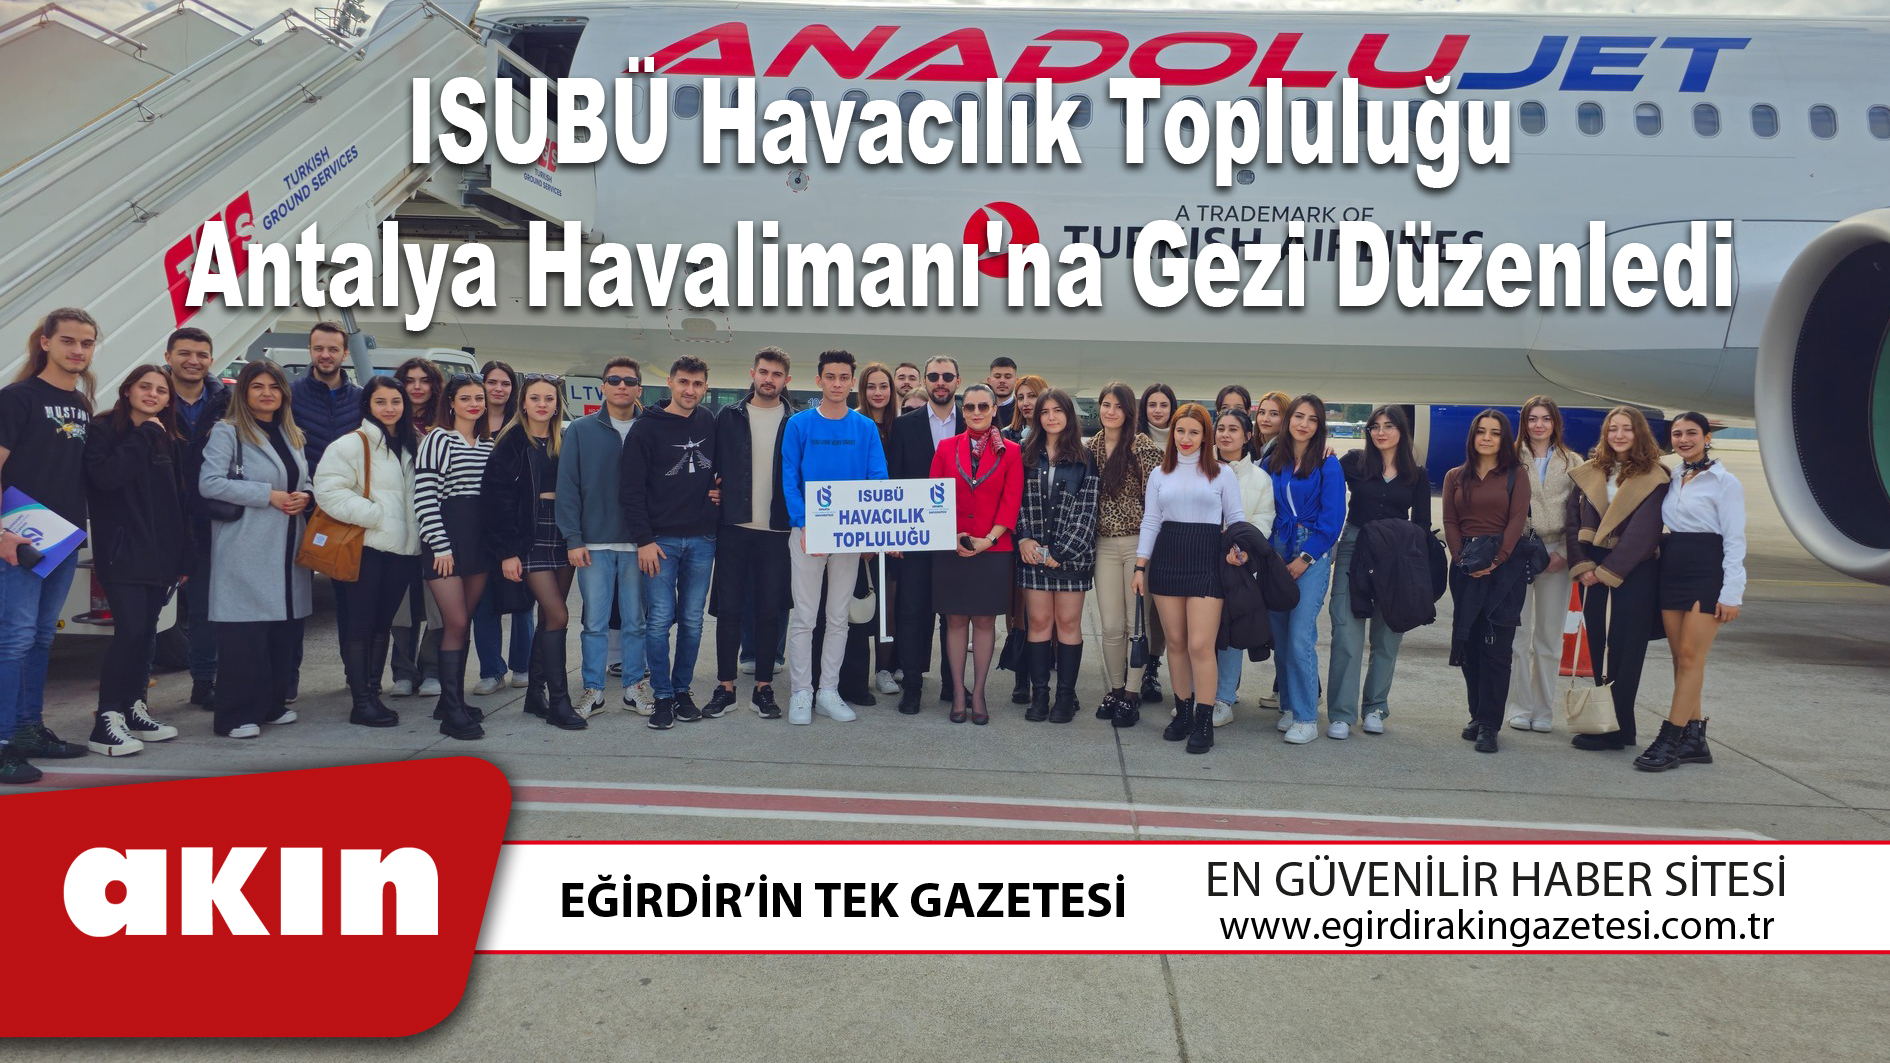 ISUBÜ Havacılık Topluluğu Antalya Havalimanı'na Gezi Düzenledi